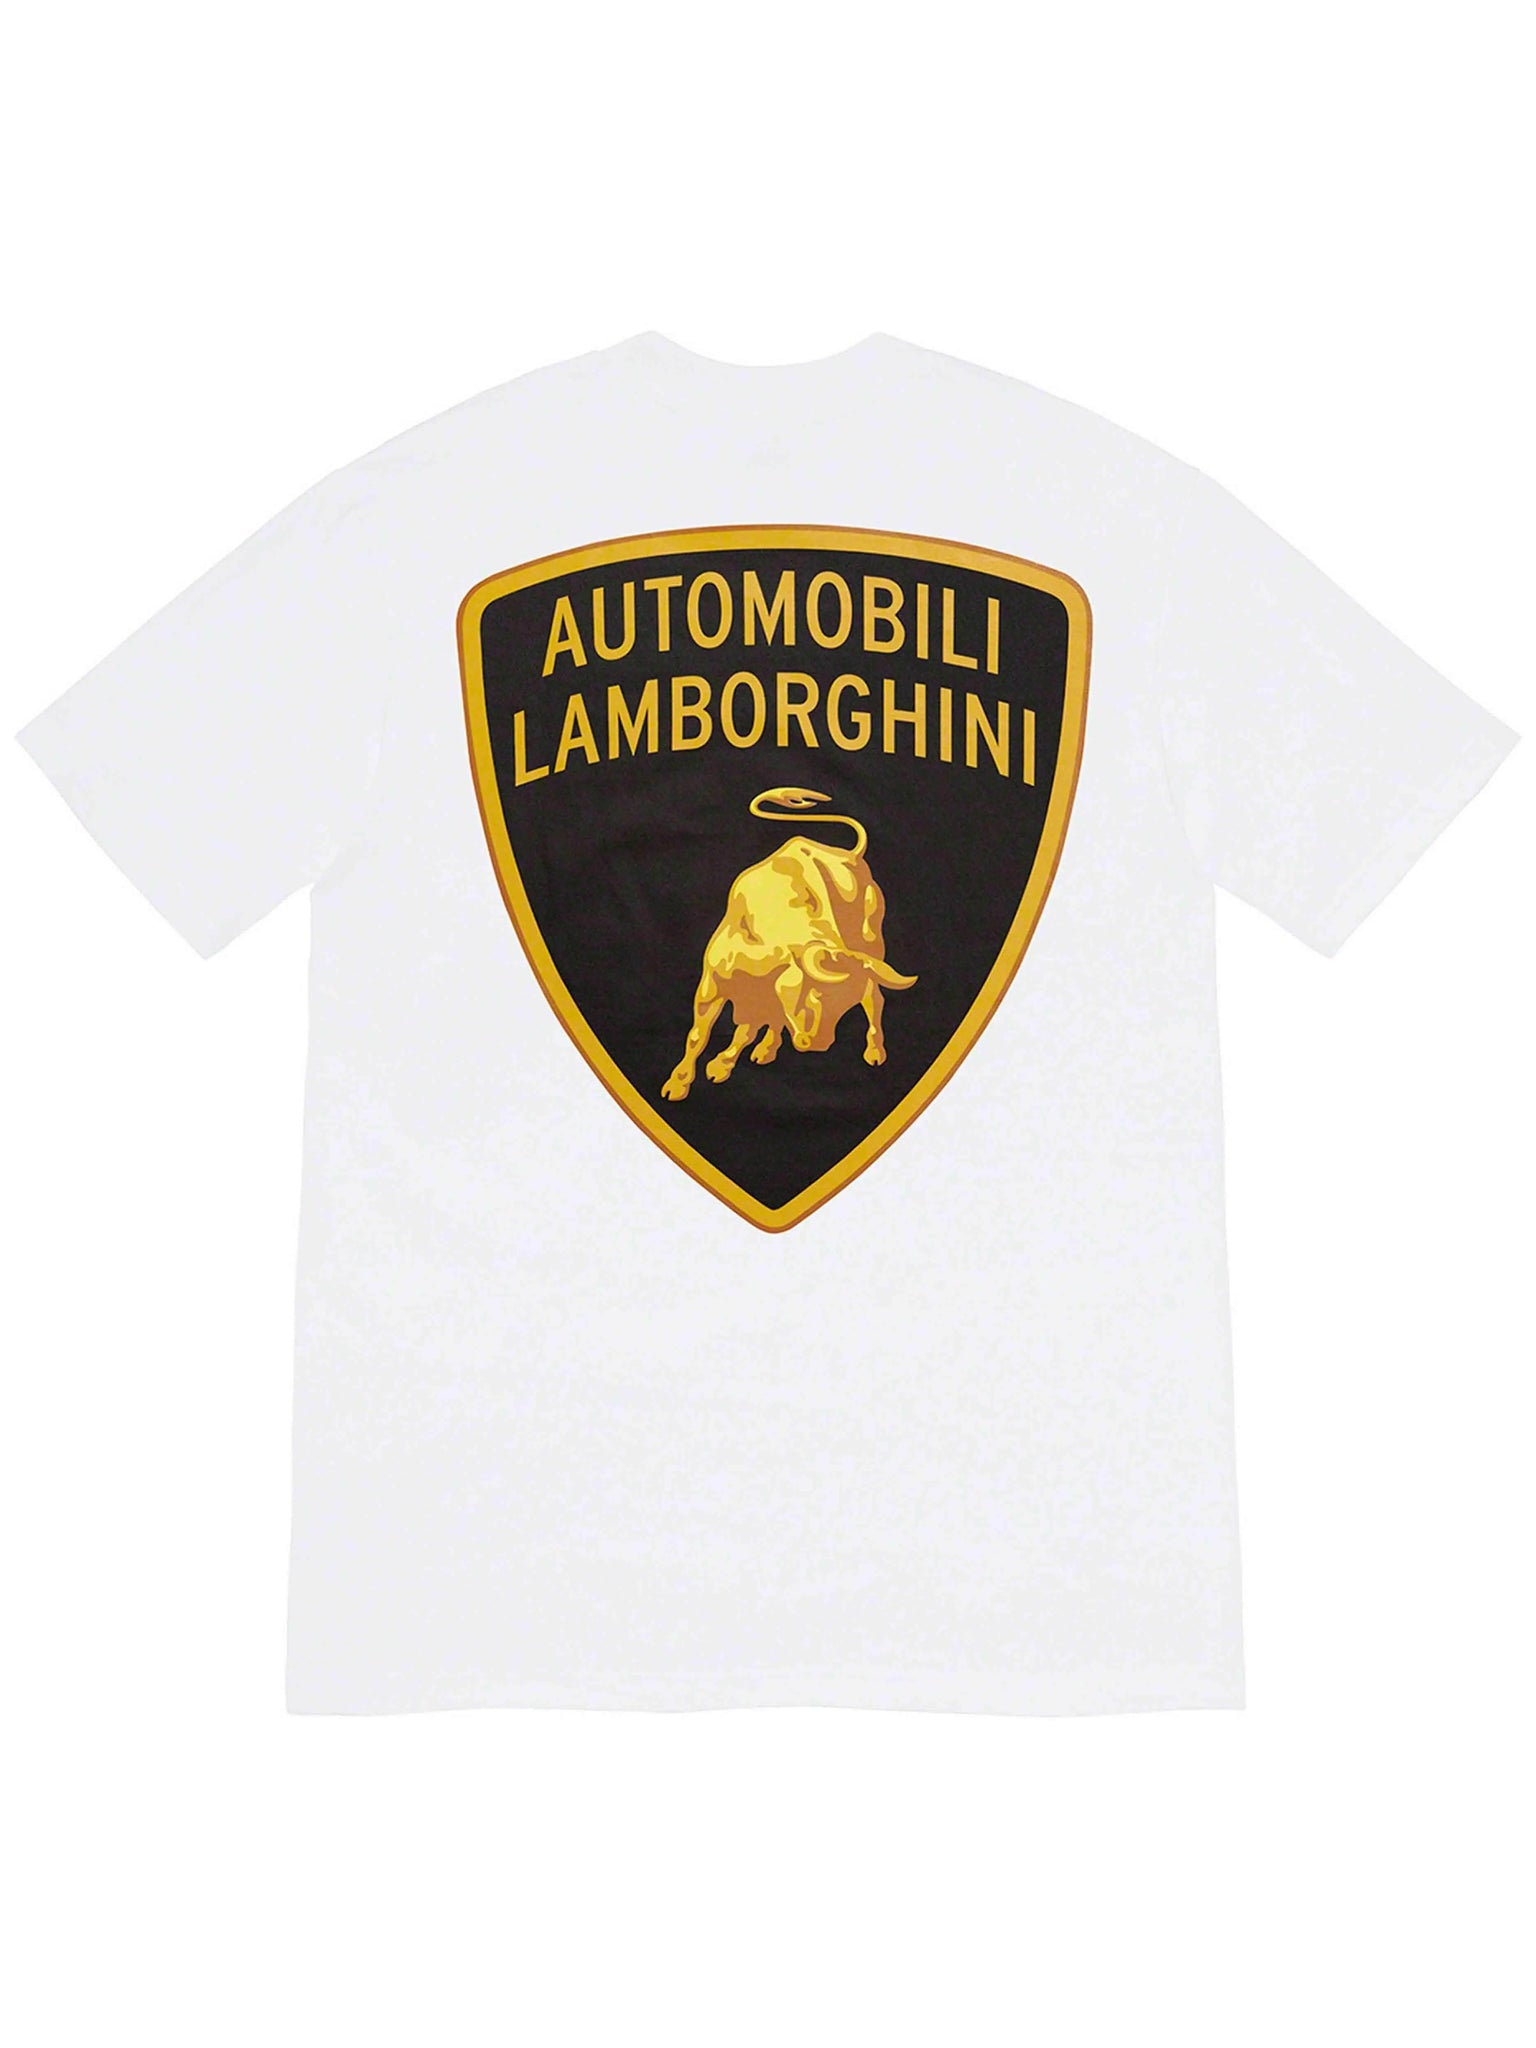 Supreme Automobili Lamborghini Tee White [SS20] Prior